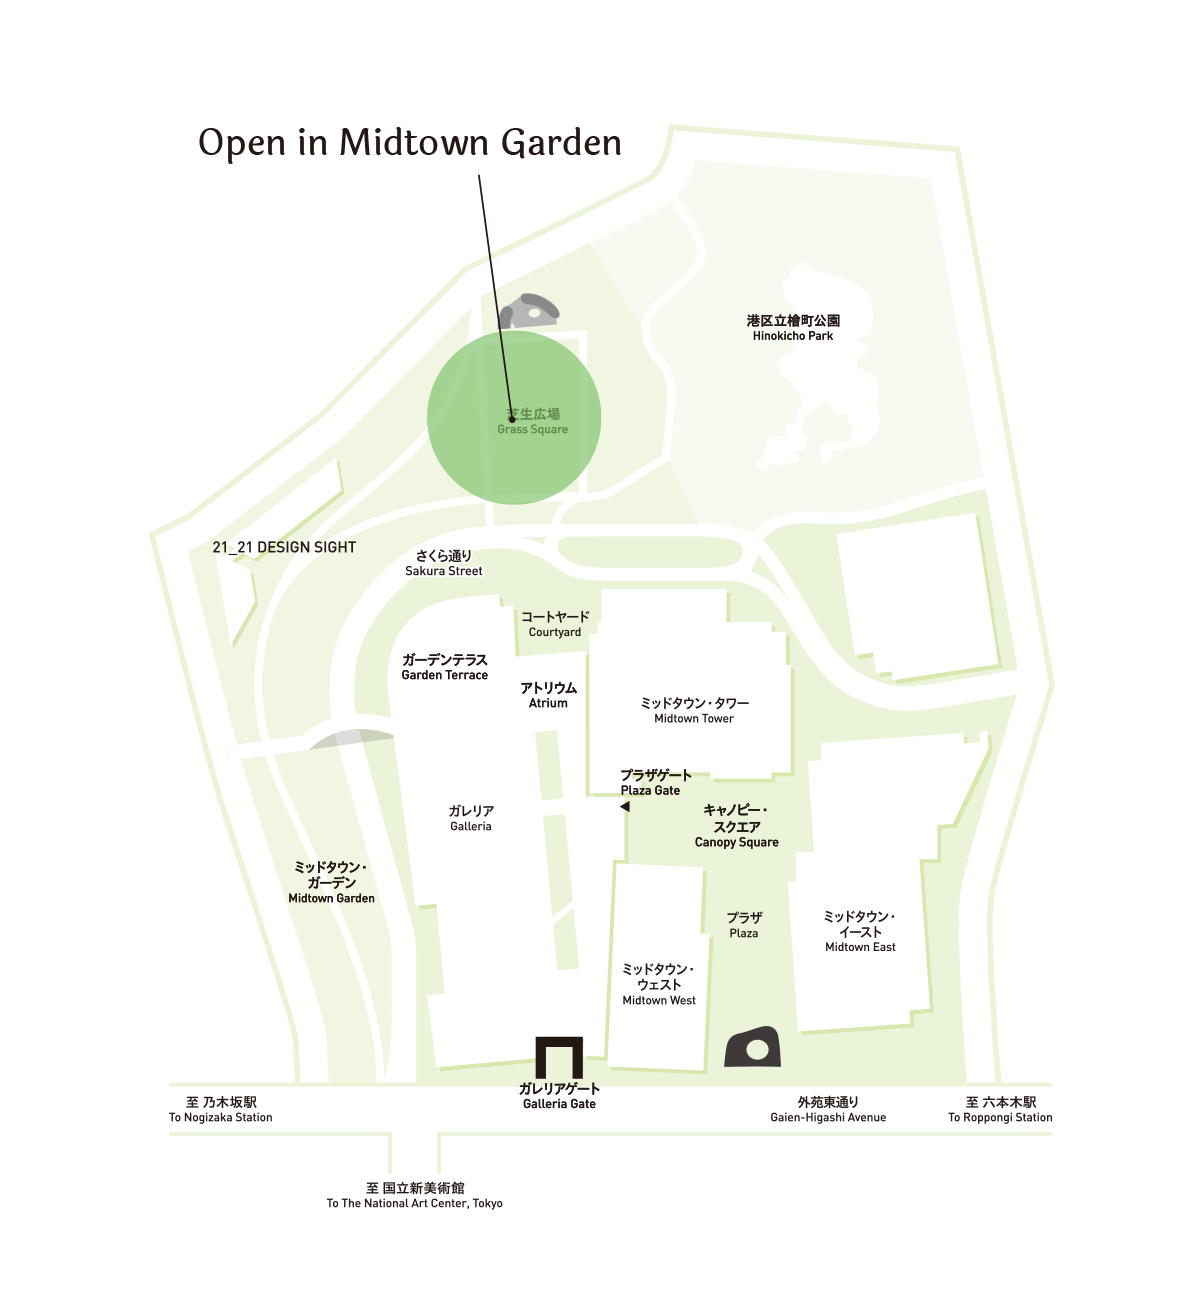 Open in Midtown Garden